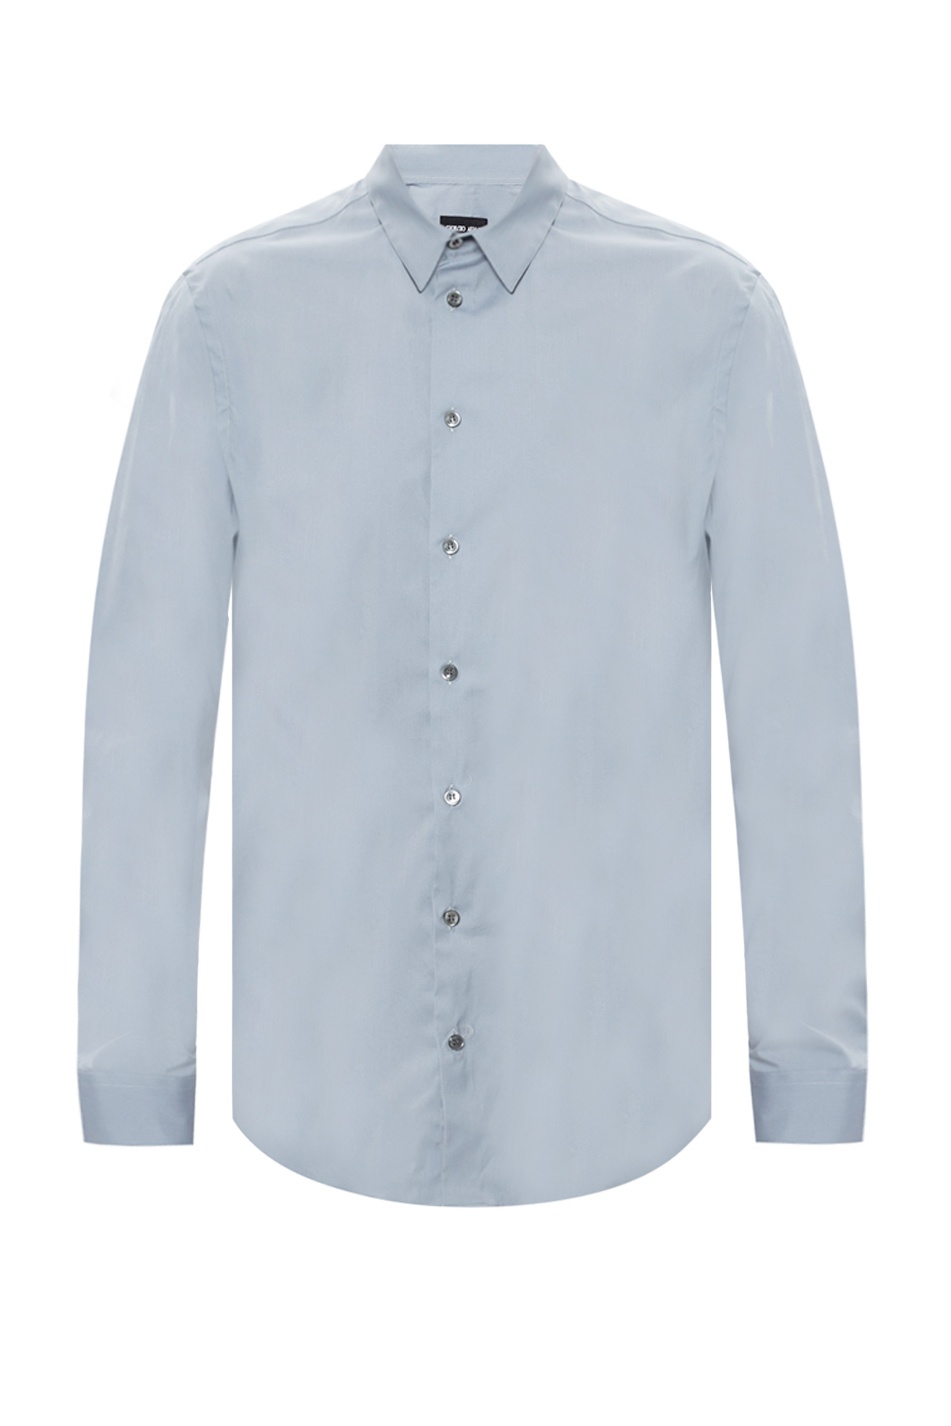 Giorgio armani Bianco Cotton shirt